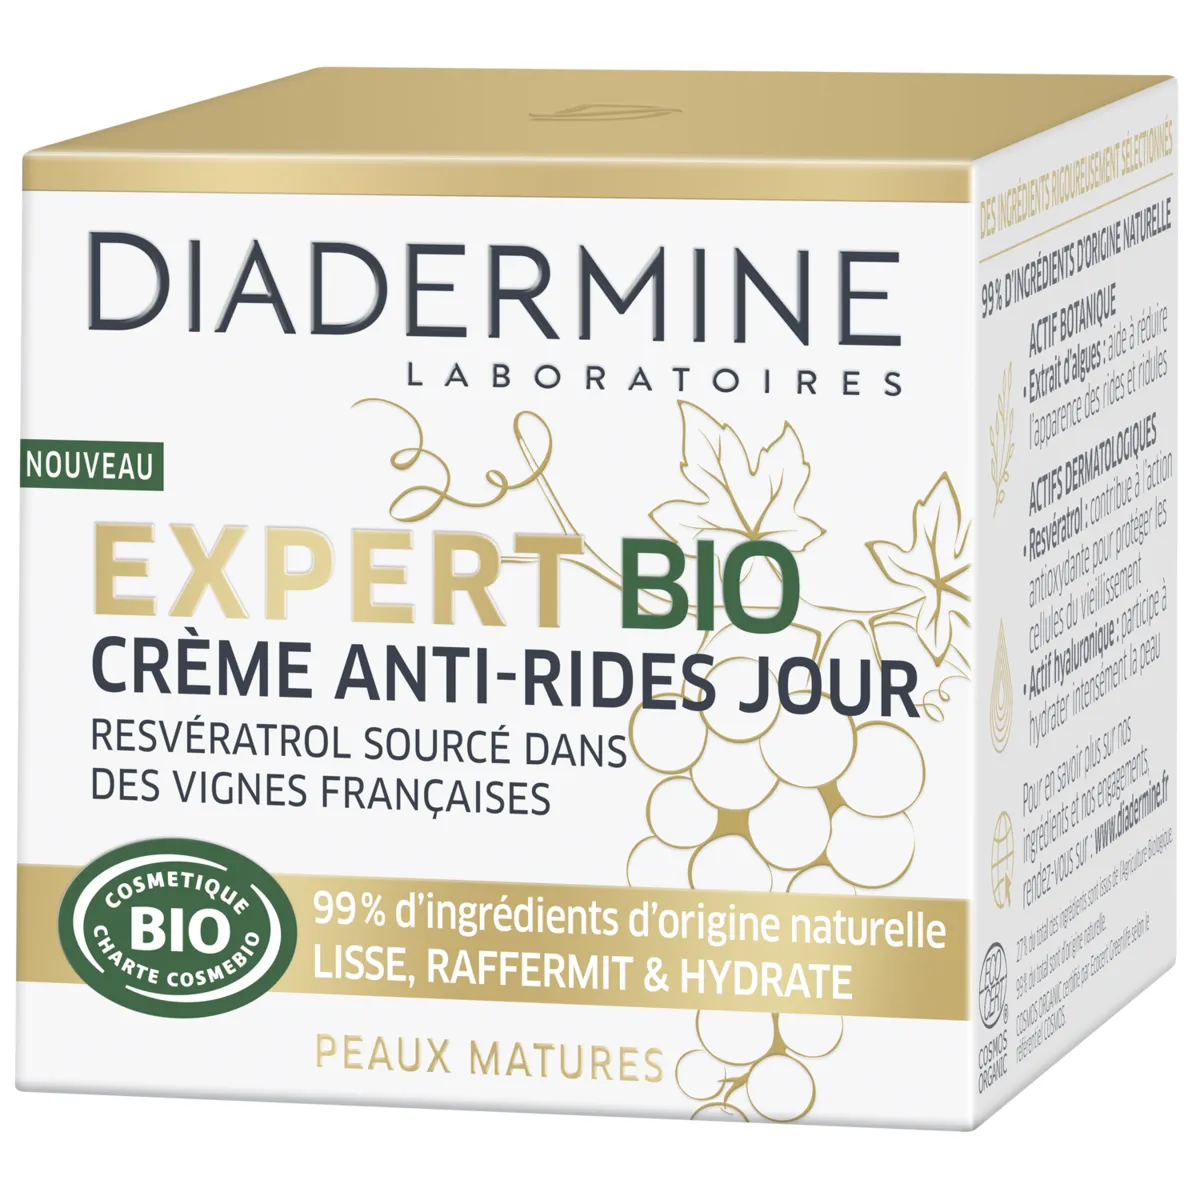 crème anti-rides expert bio diadermine